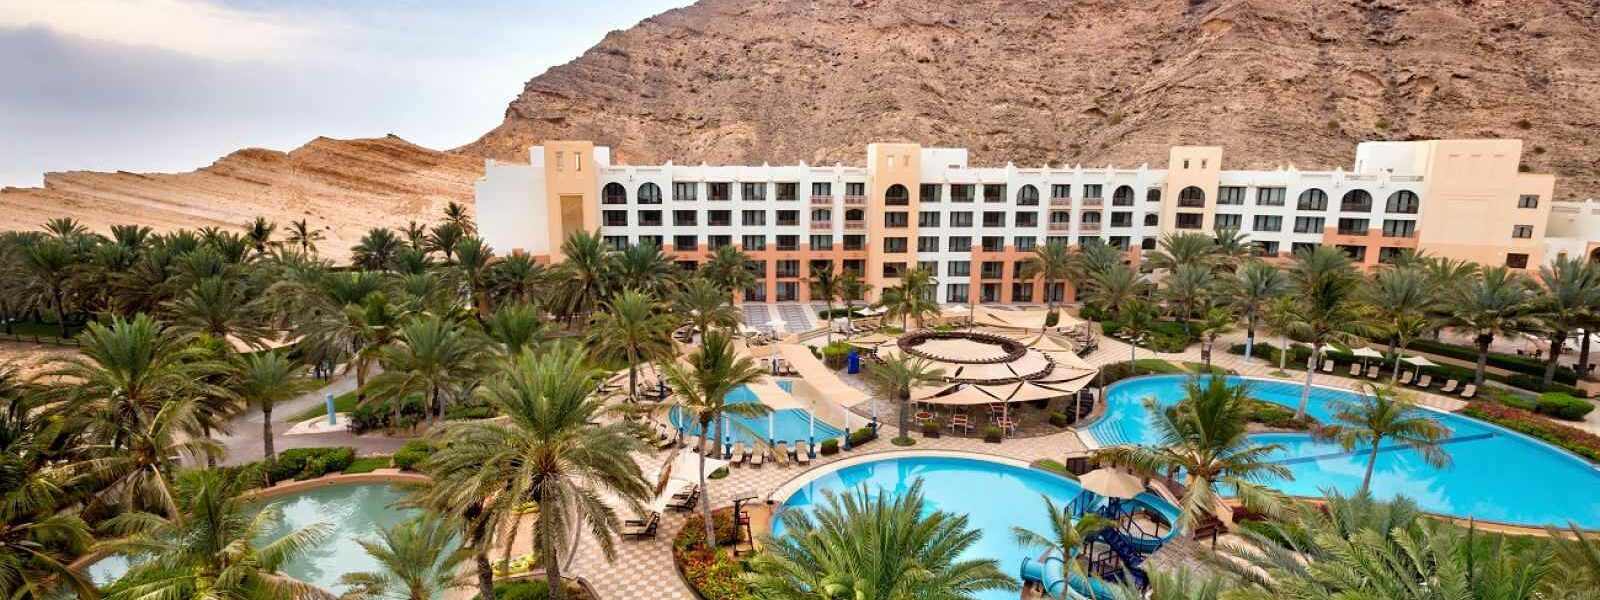 Al Waha at Shangri-La Barr Al Jissah Resort & Spa